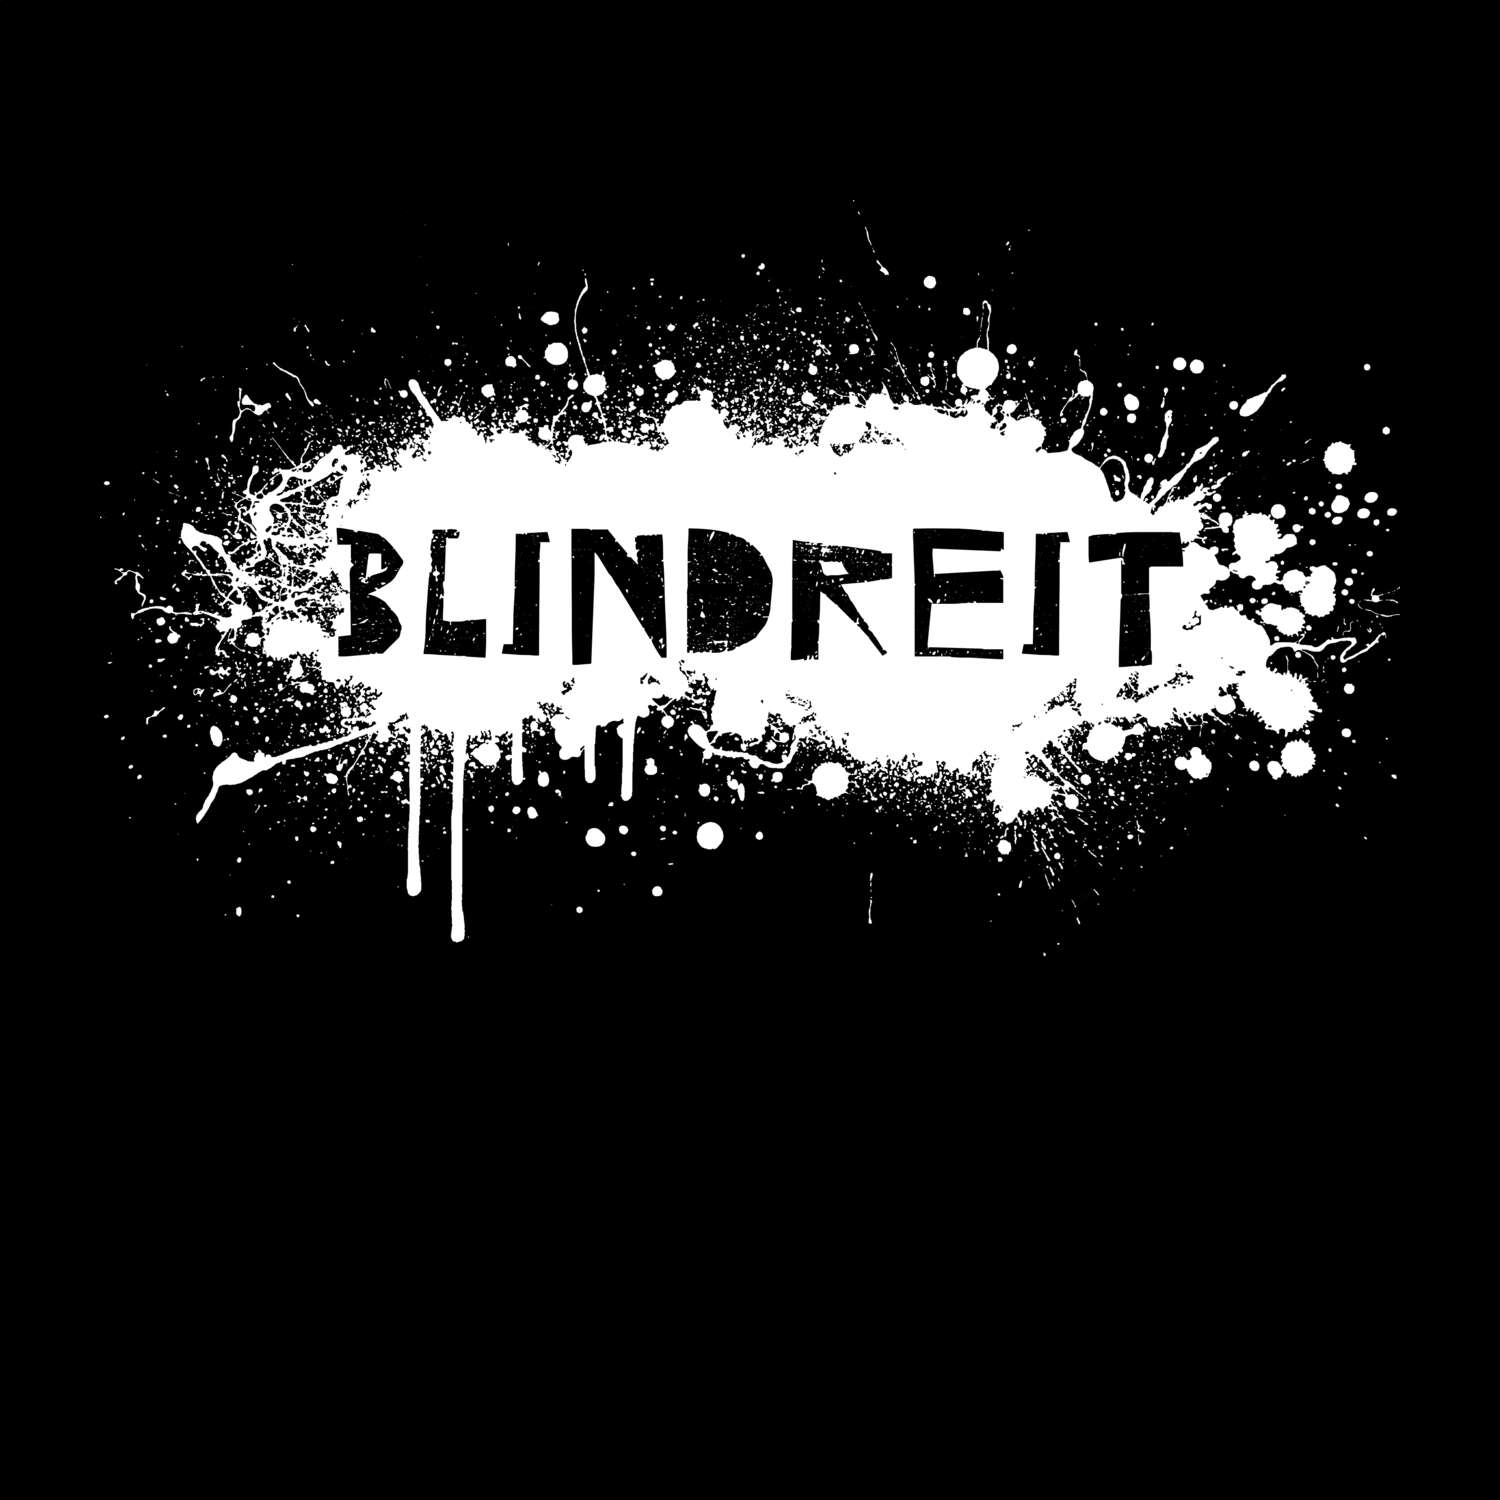 Blindreit T-Shirt »Paint Splash Punk«